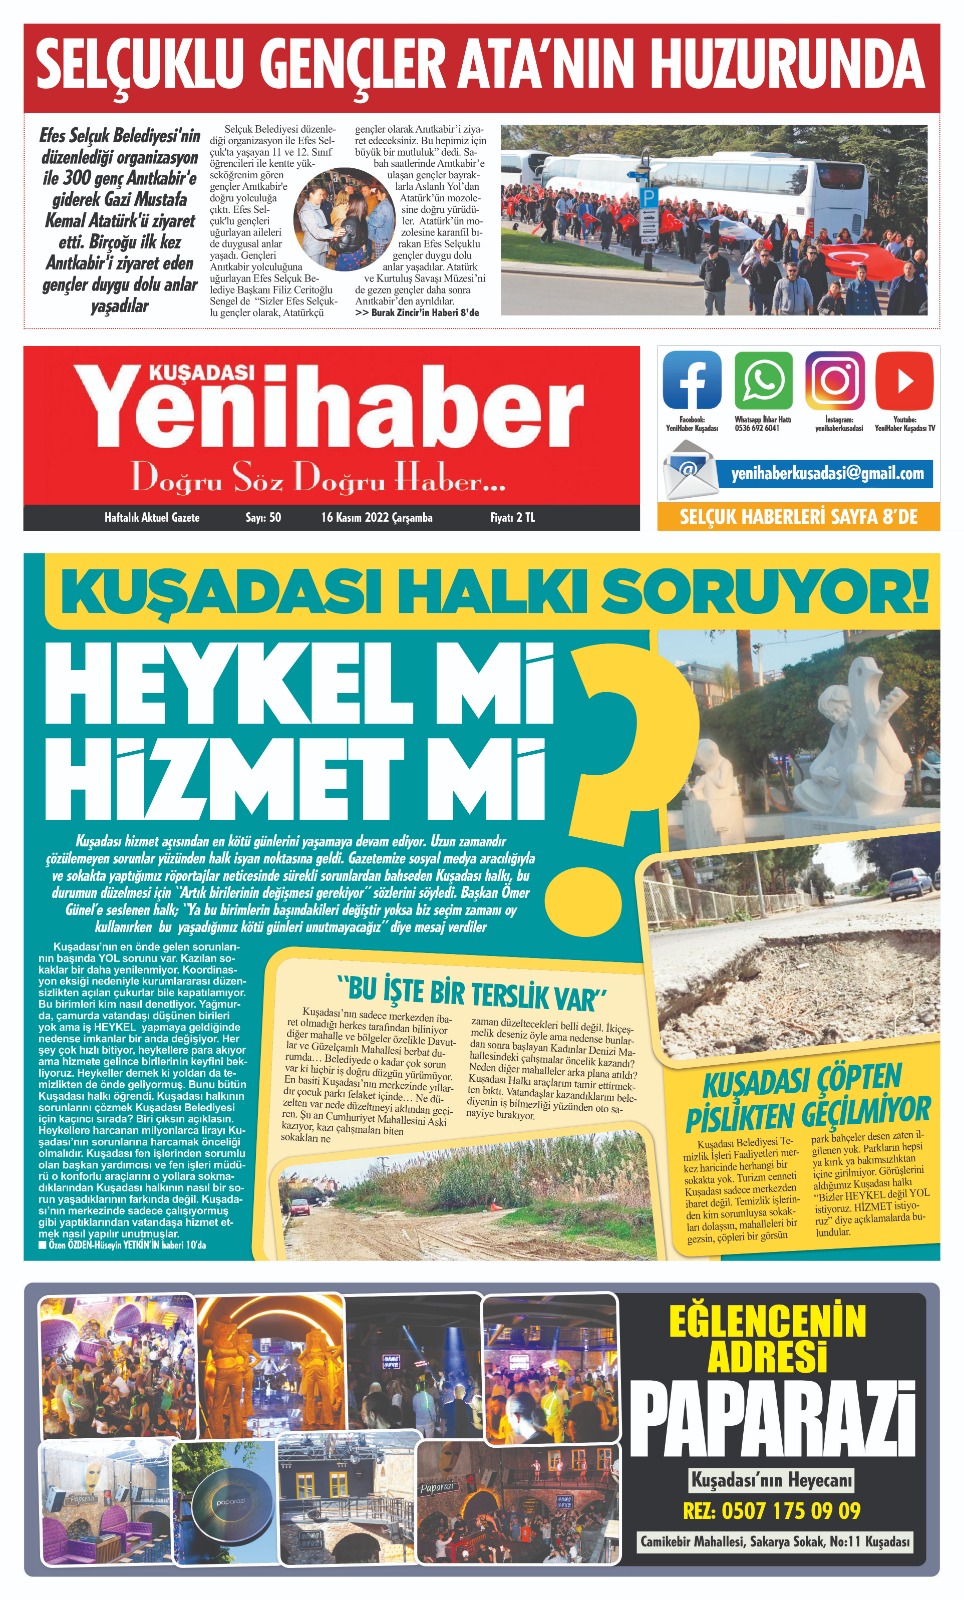 Kuşadası Yeni Haber Gazetesi Ajansı & YENİ HABER GAZETESİ